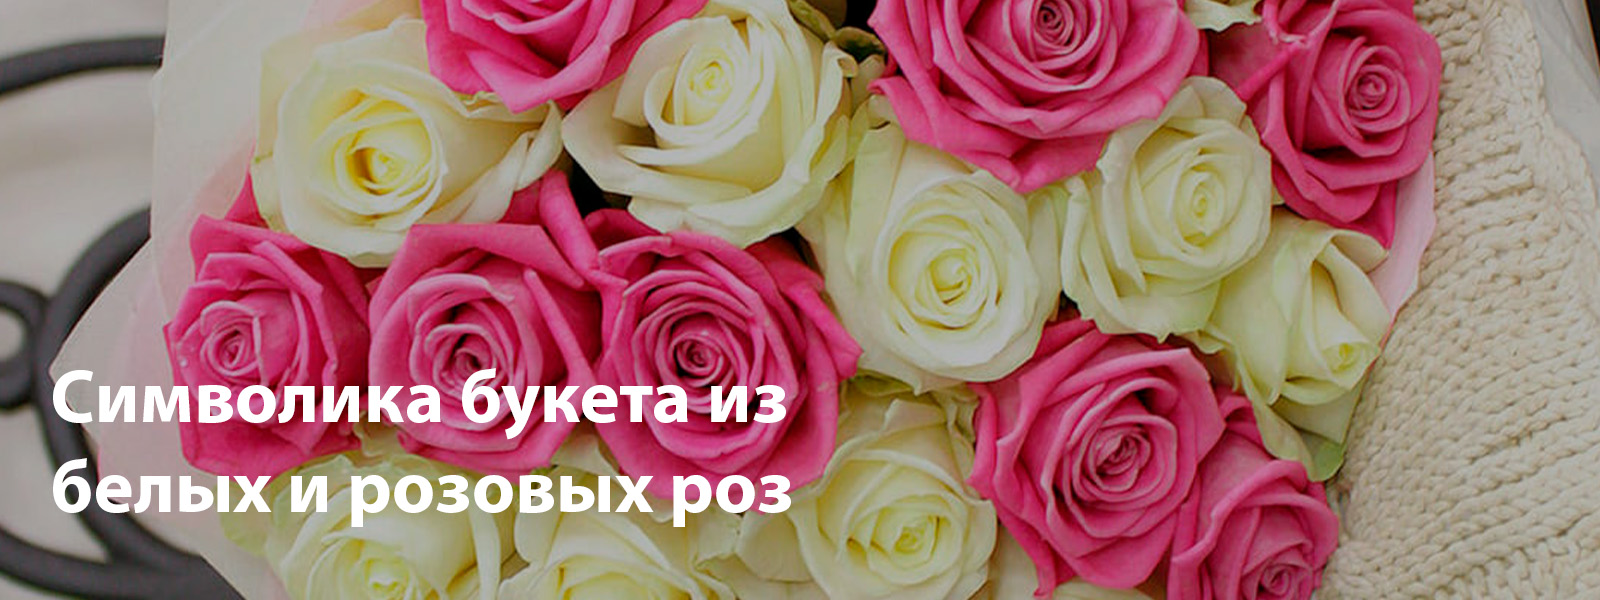 Символика букета из белых и розовых роз